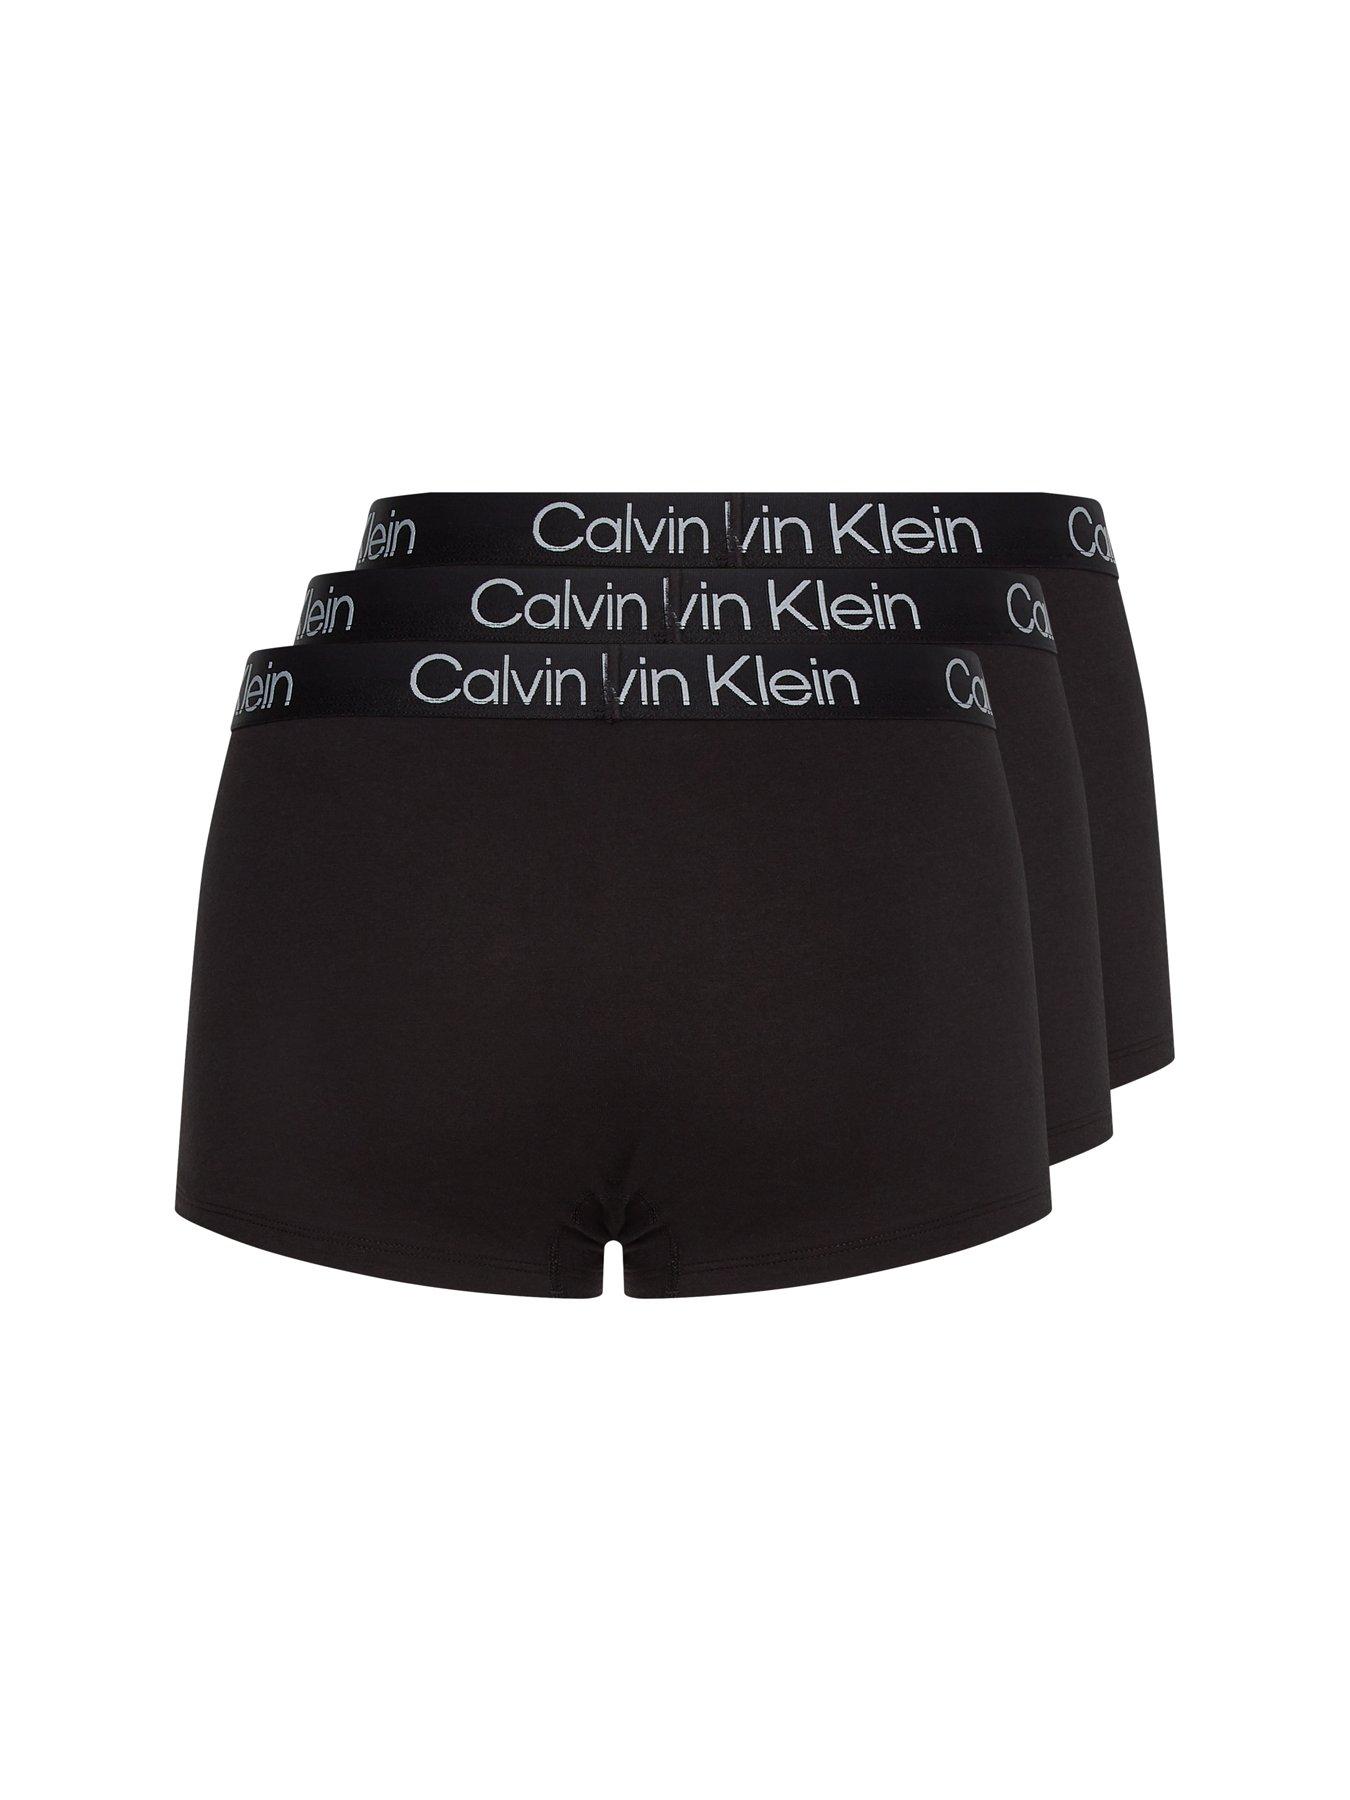 Calvin Klein 3 Pack Modern Structure Boxer Brief - Black (Grey